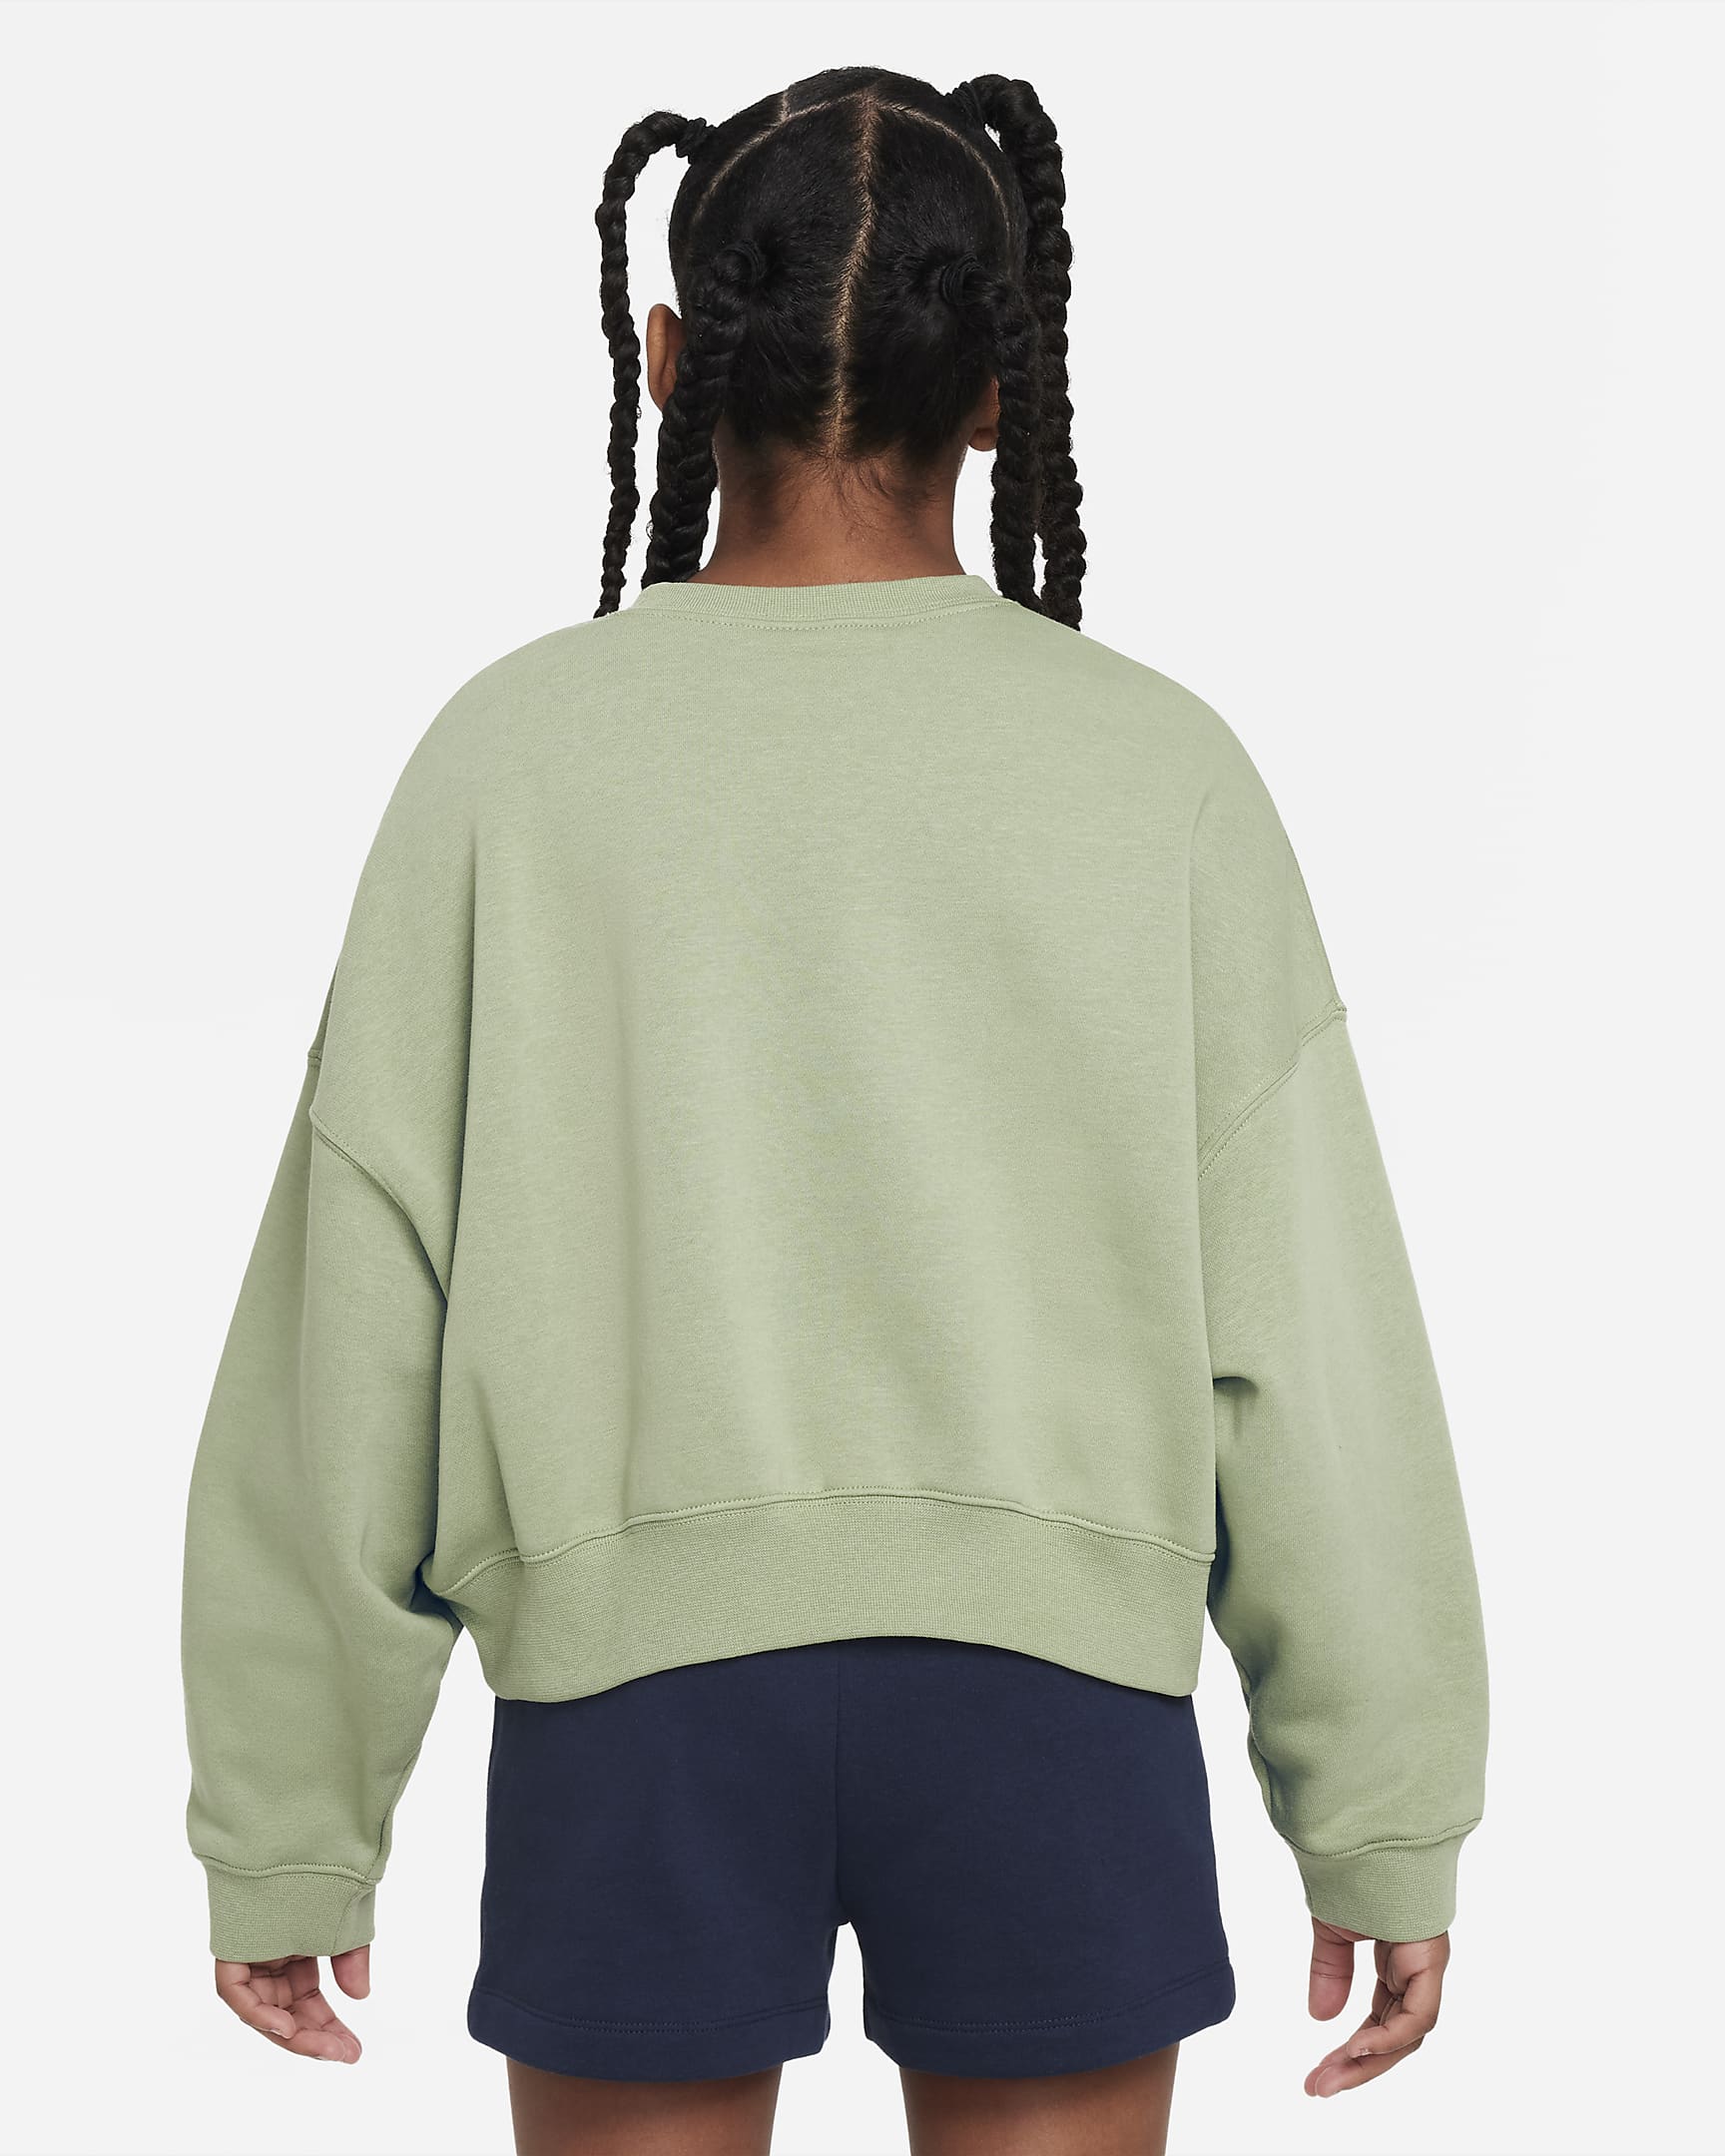 Nike Sportswear Older Kids' (Girls') Fleece Crew-Neck Sweatshirt. Nike LU